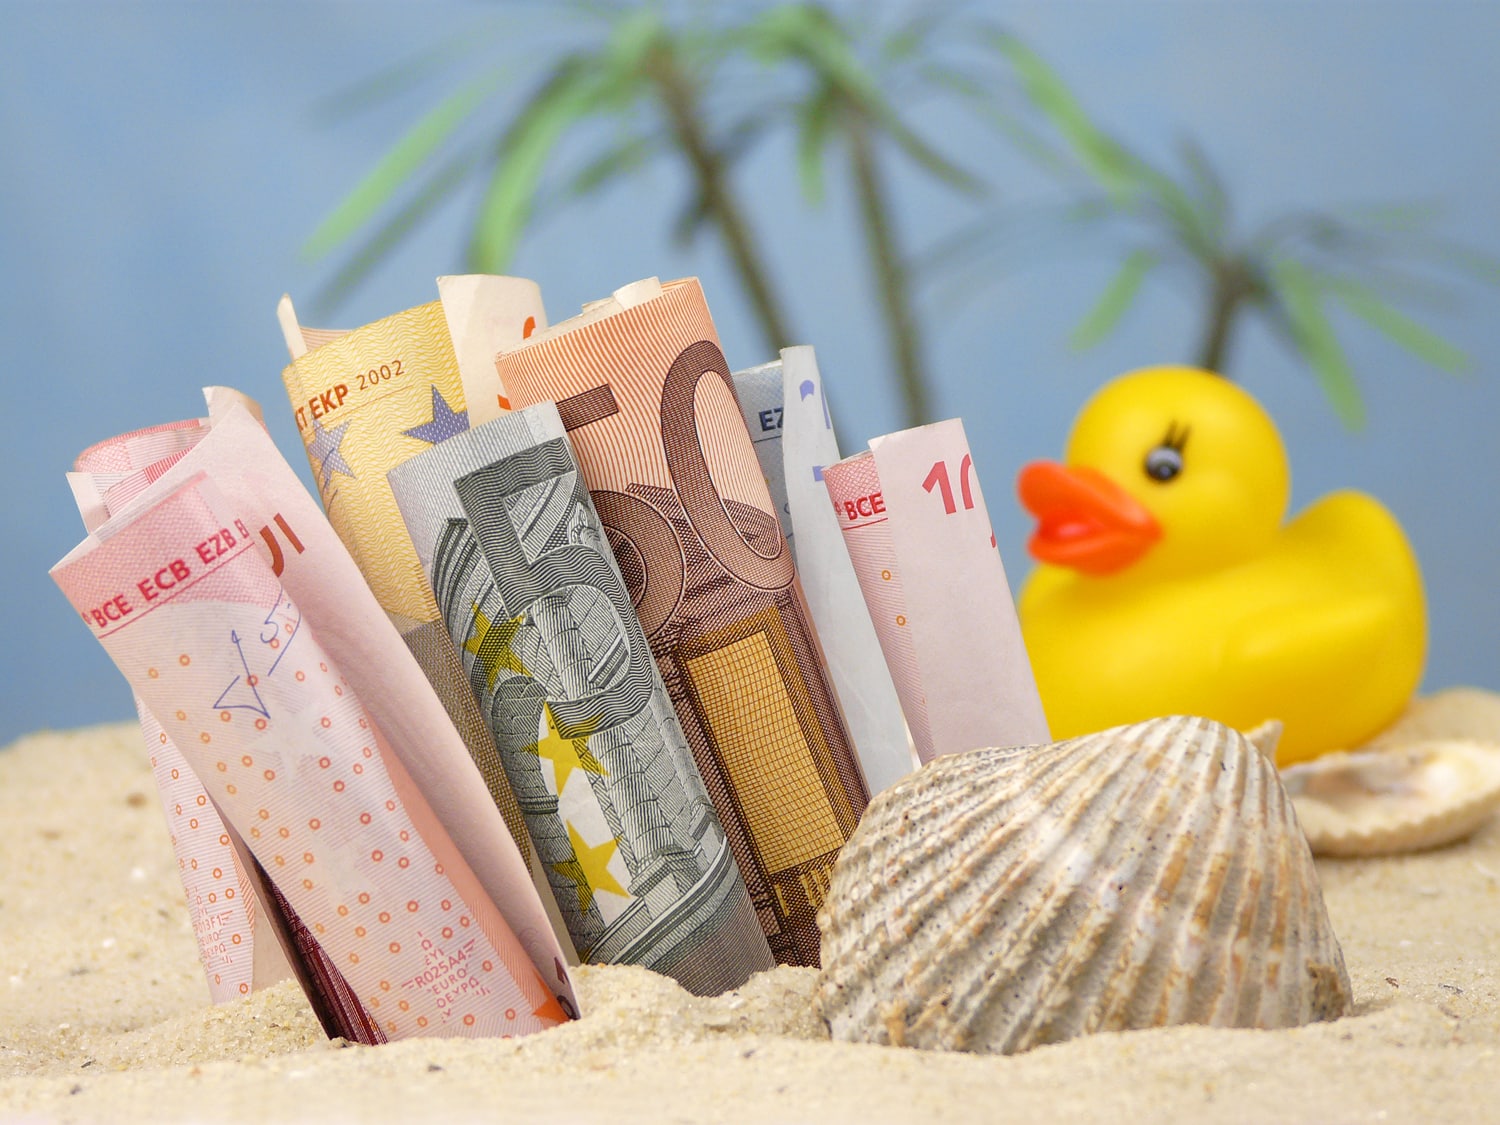 Aegon -planificar financieramente tus vacaciones